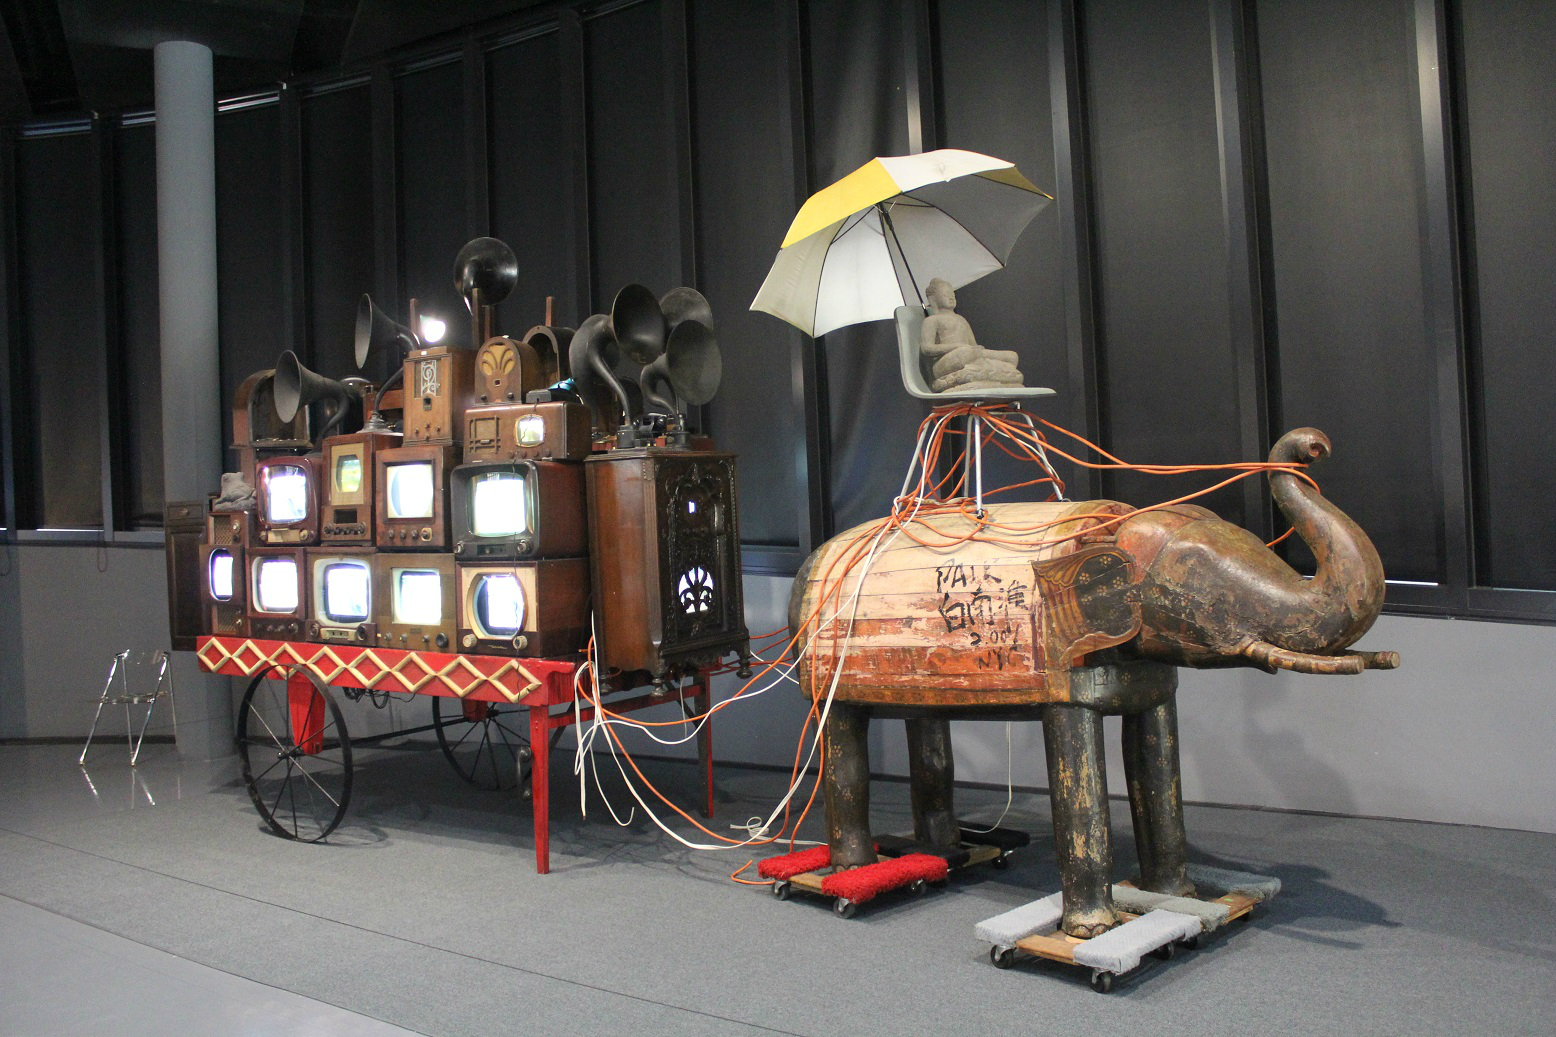 ‘미디어에 대한 기억’을 담아낸 백남준의 작품 ‘코끼리 수레’(1999-2001, 혼합매체, 백남준아트센터 소장)